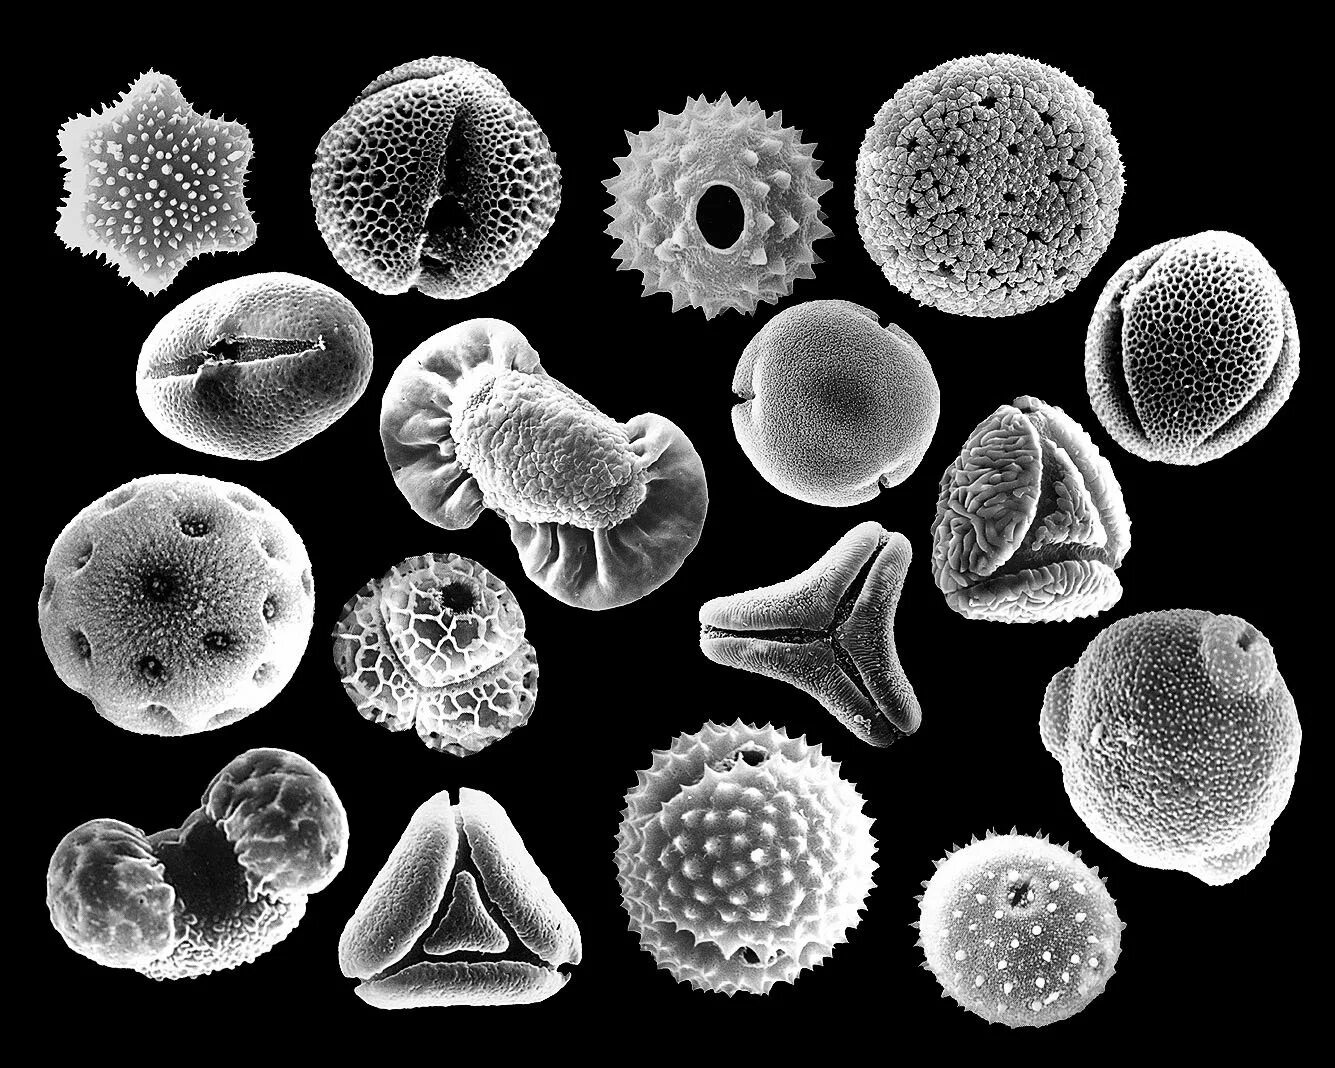 Пыльца микроскопия палинология. Пыльцевое зерно микроскоп. Пыльца растений микроскоп. Пыльца донника электронная микроскопия. Пыльца и споры